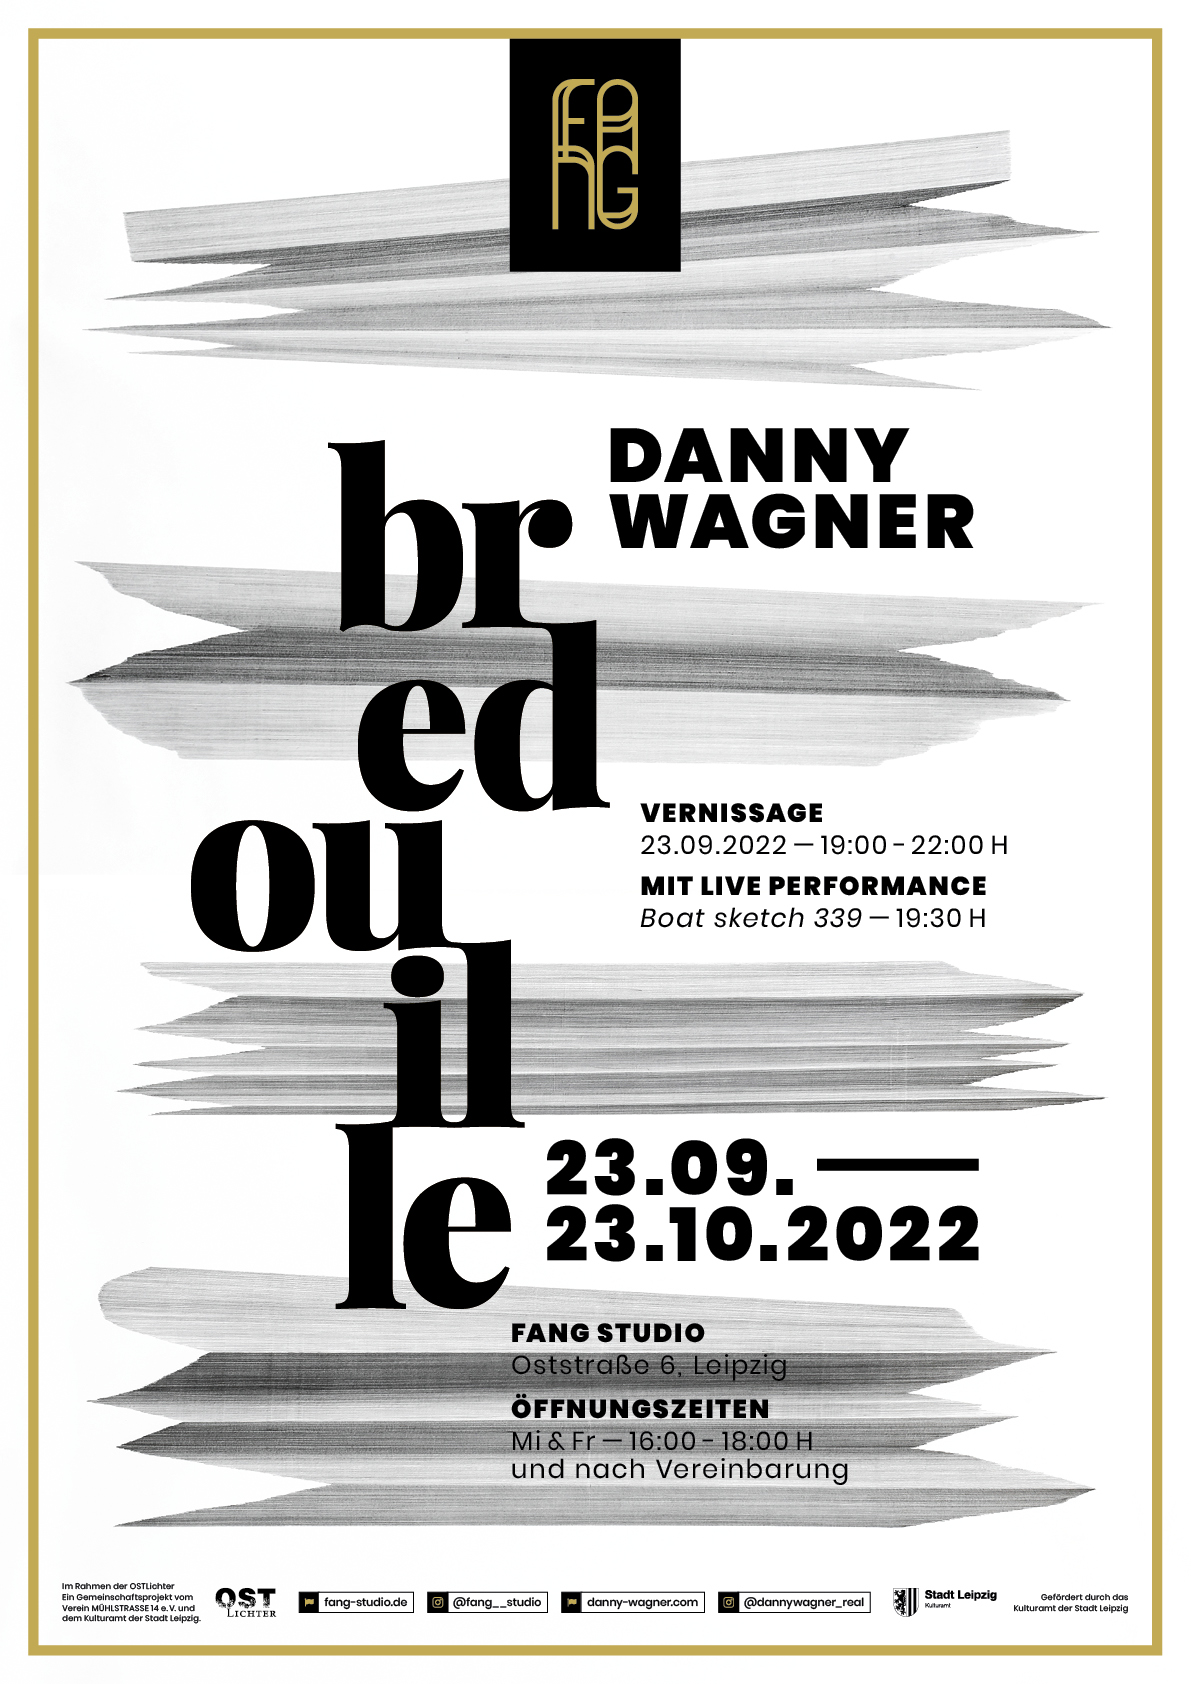 Danny Wagner Bredouille Plakat